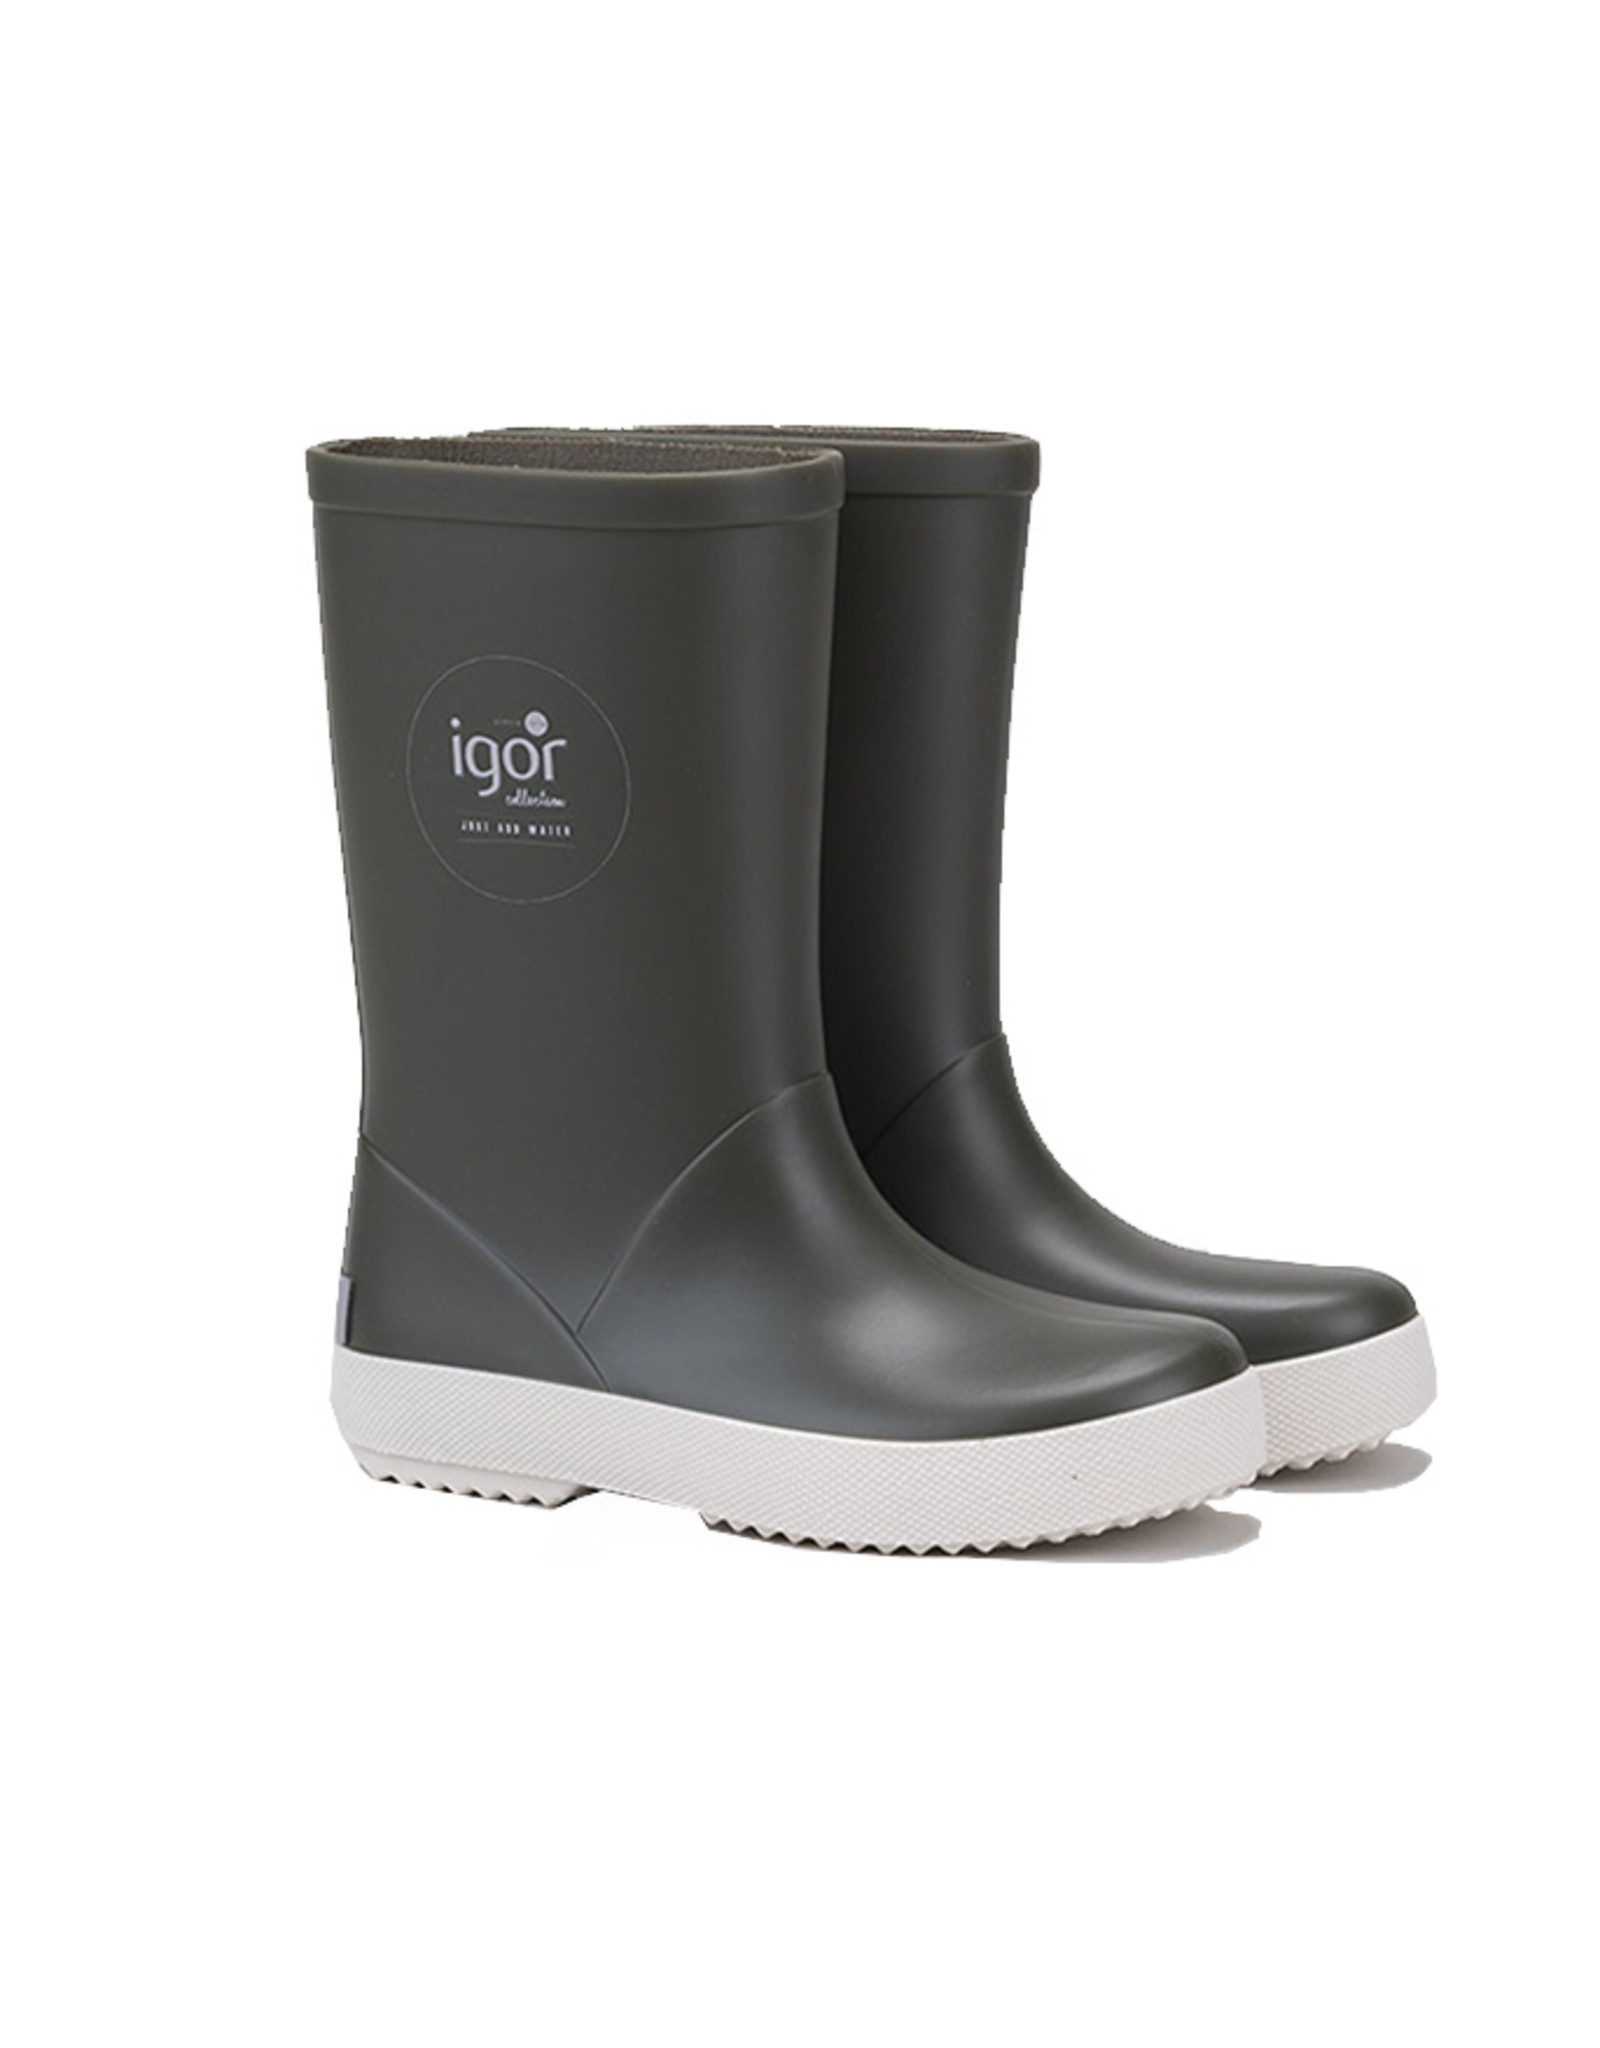 Splash Rain Boots Khaki - JPH Store